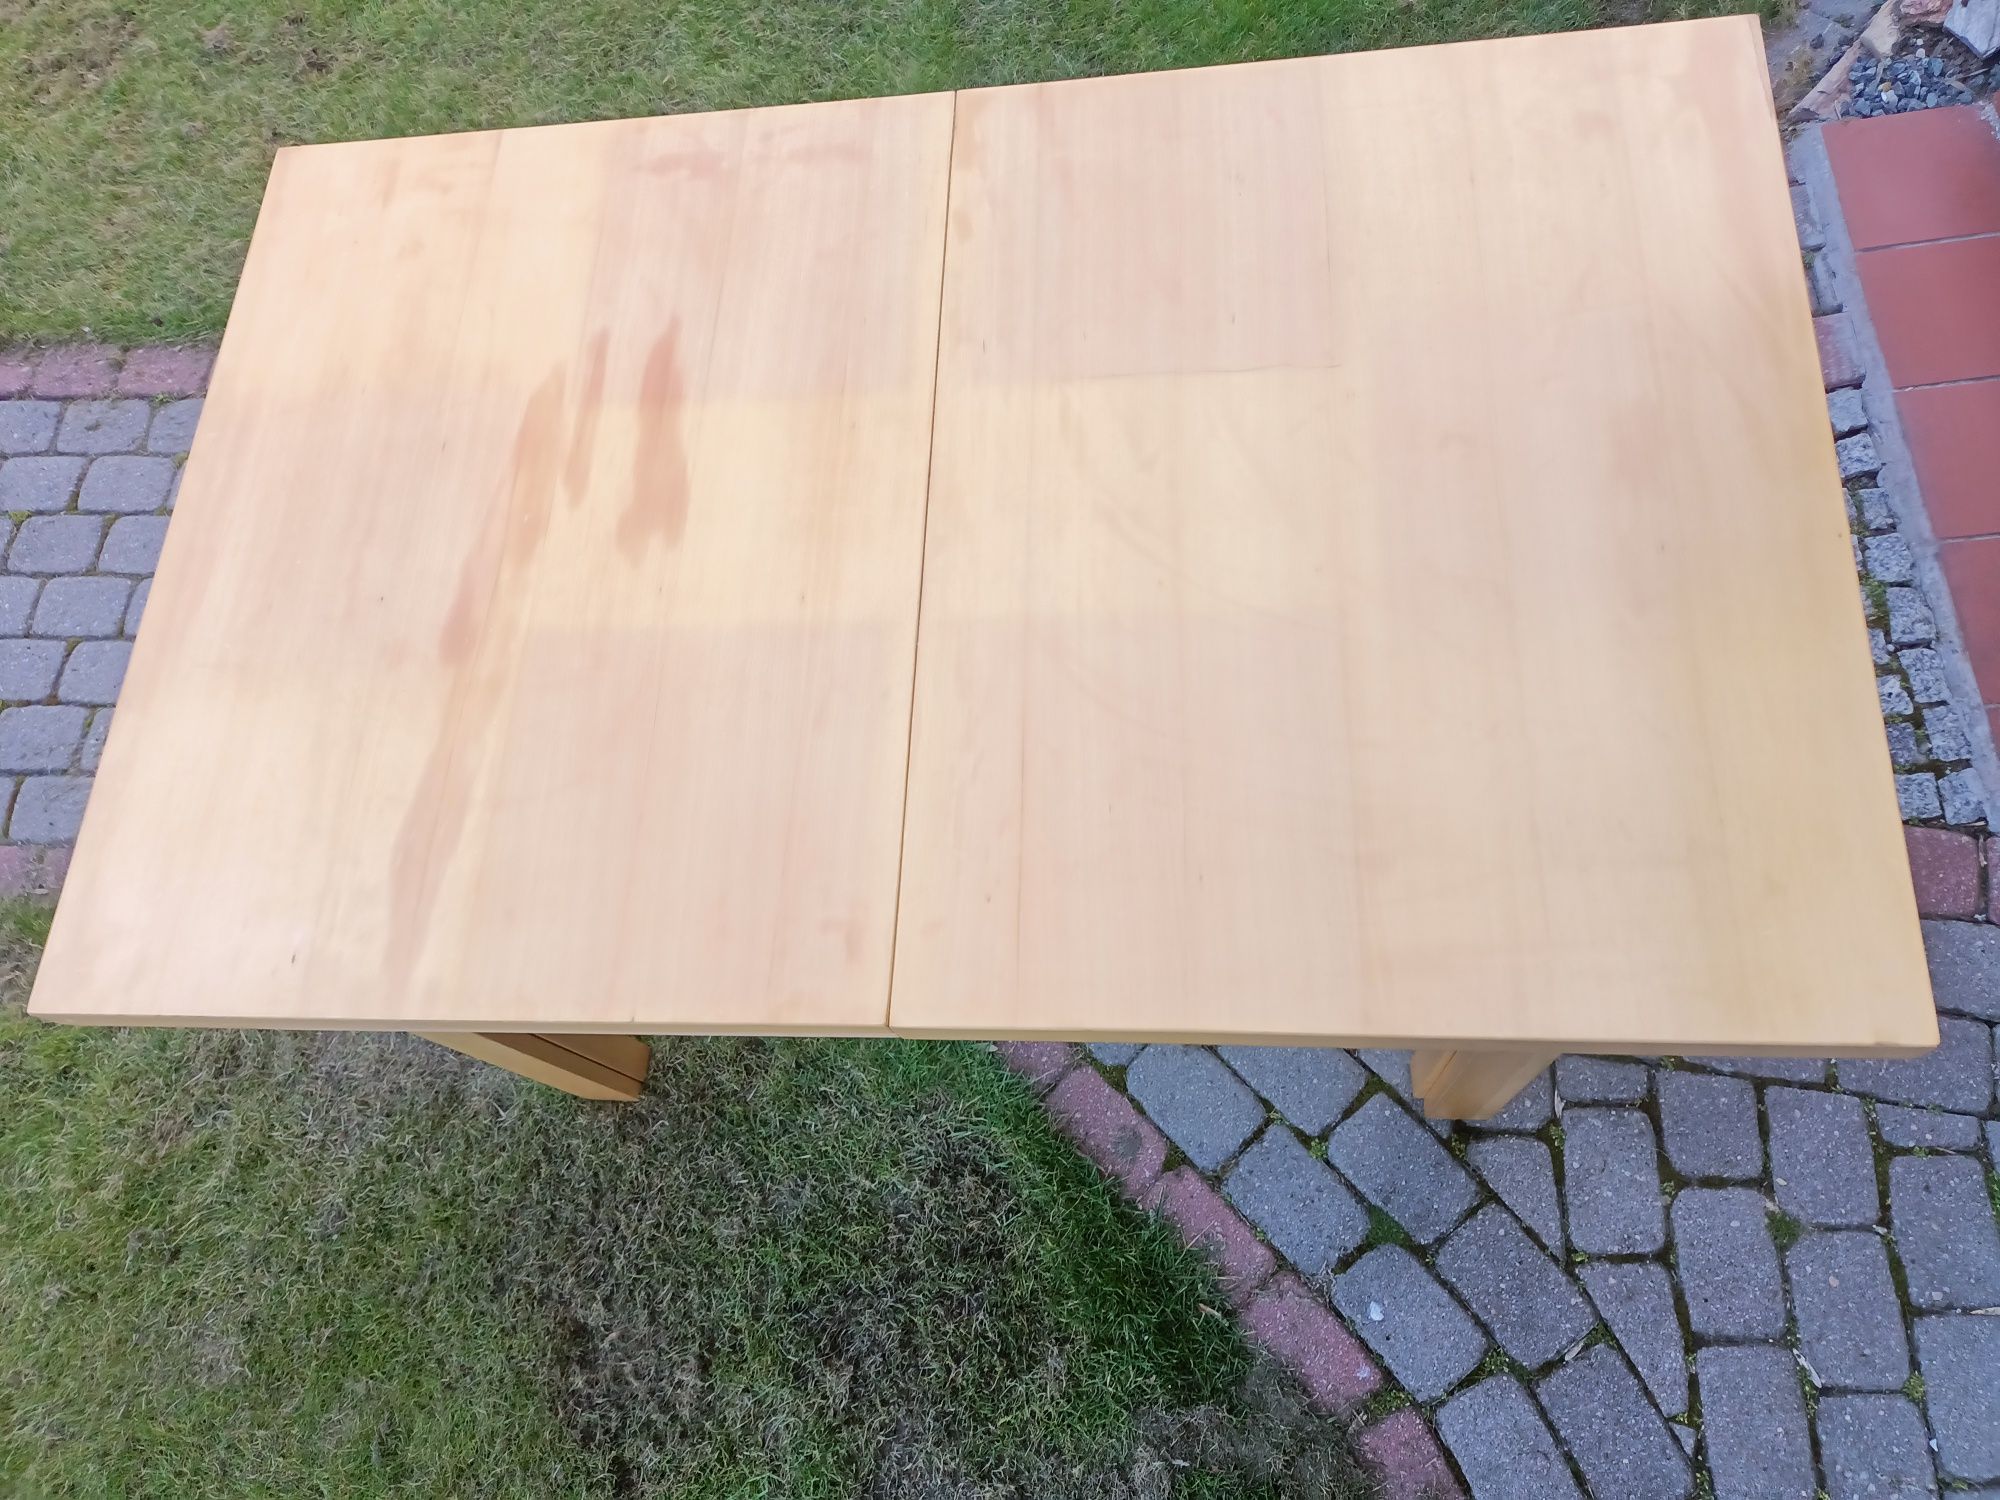 Stół kuchenny drewniany